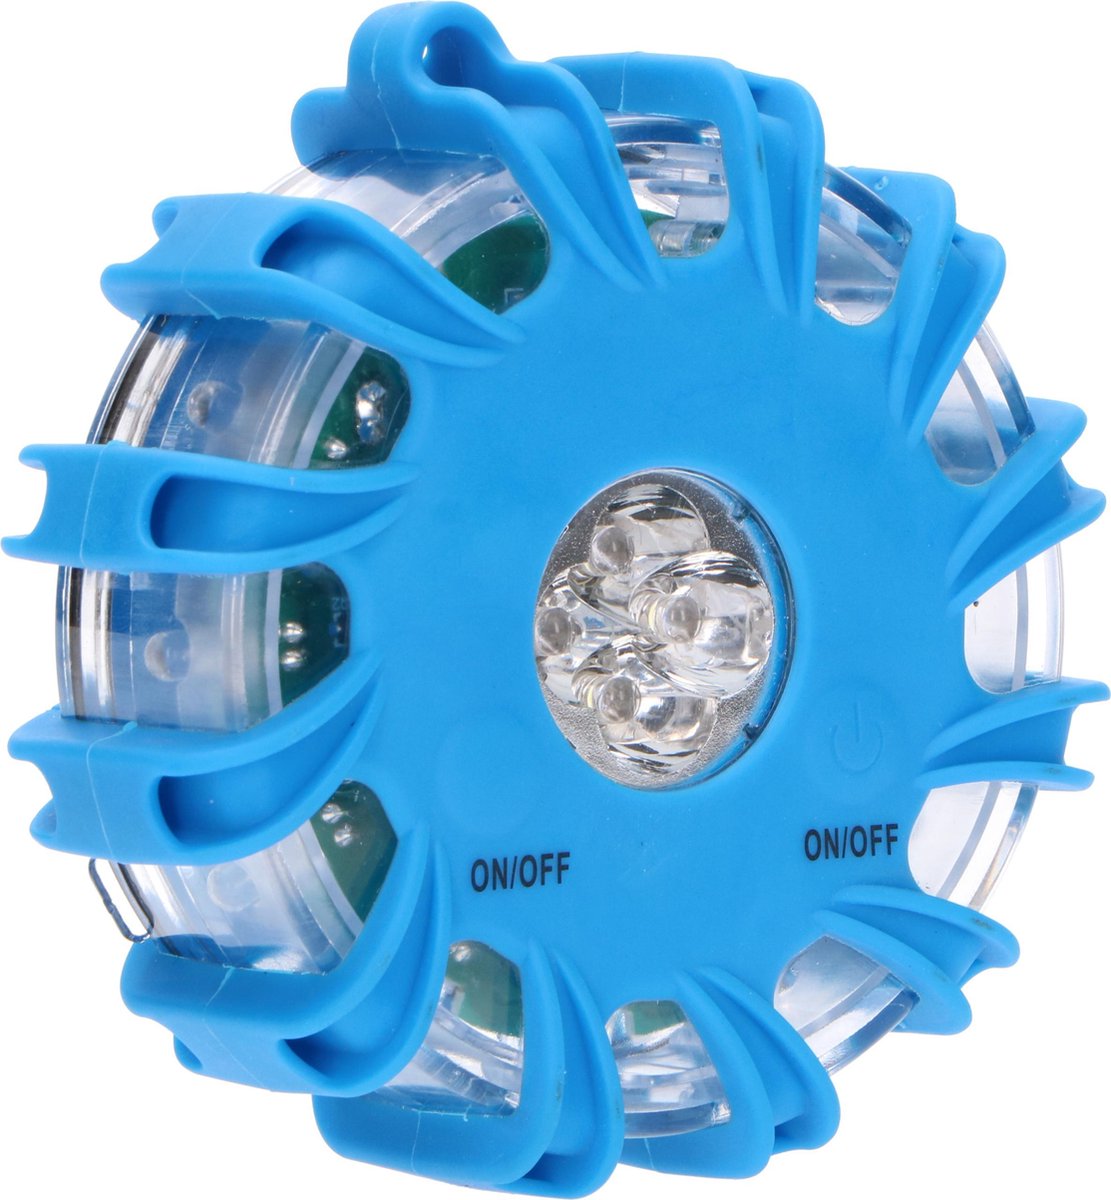 Proventa LED Zwaailamp Blauw - Magnetische noodverlichting met 9